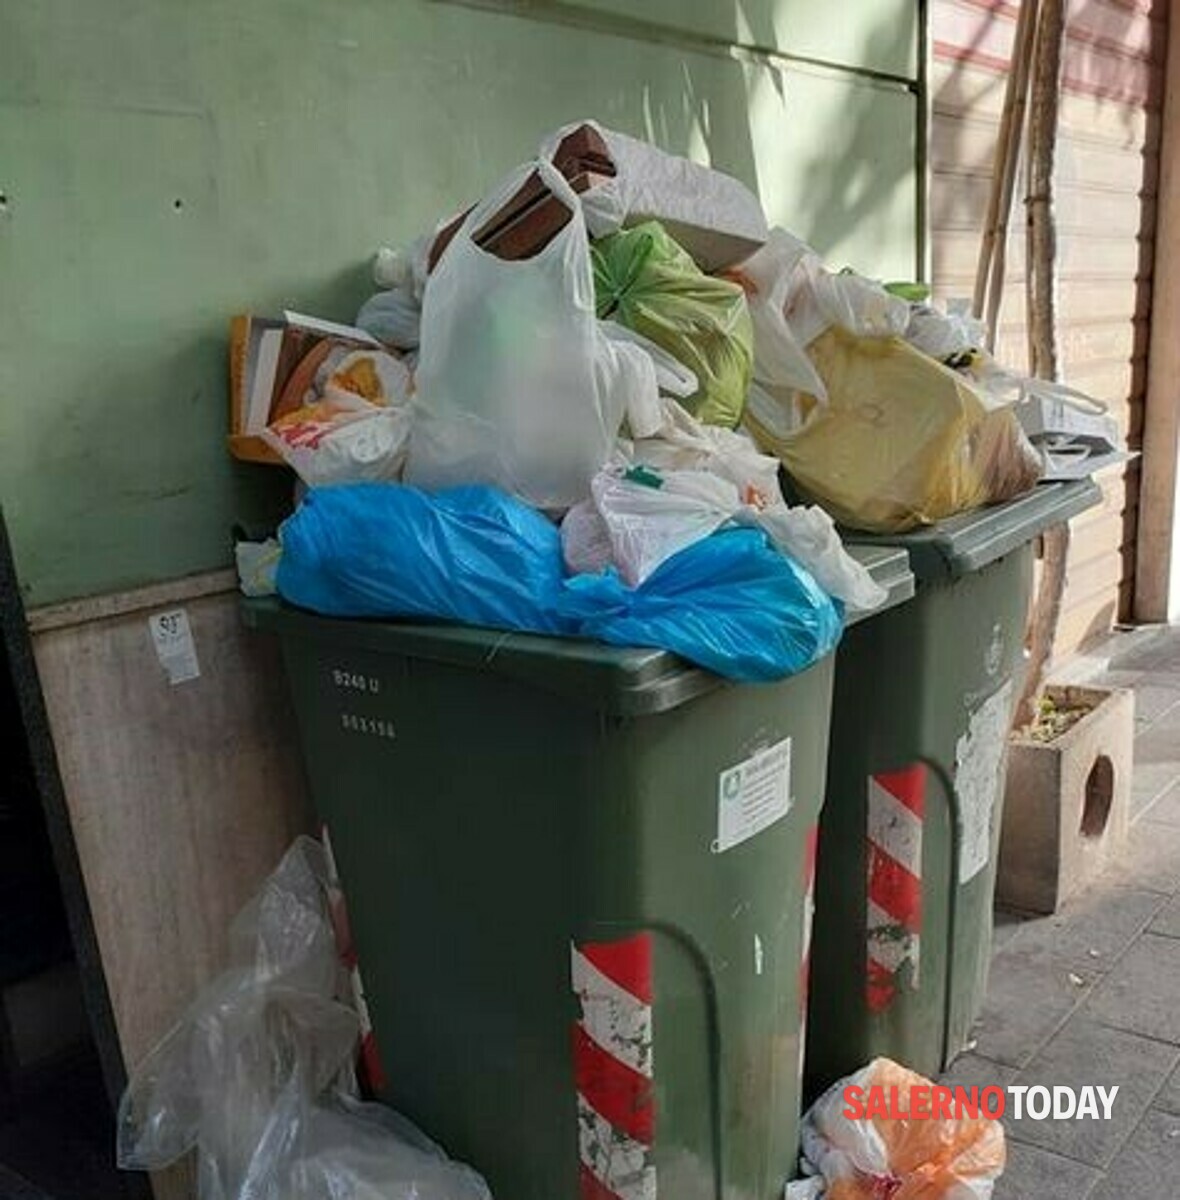 Cestini colmi di rifiuti a Salerno: da San Leonardo a via Manganario, si blocca la raccolta dell’umido